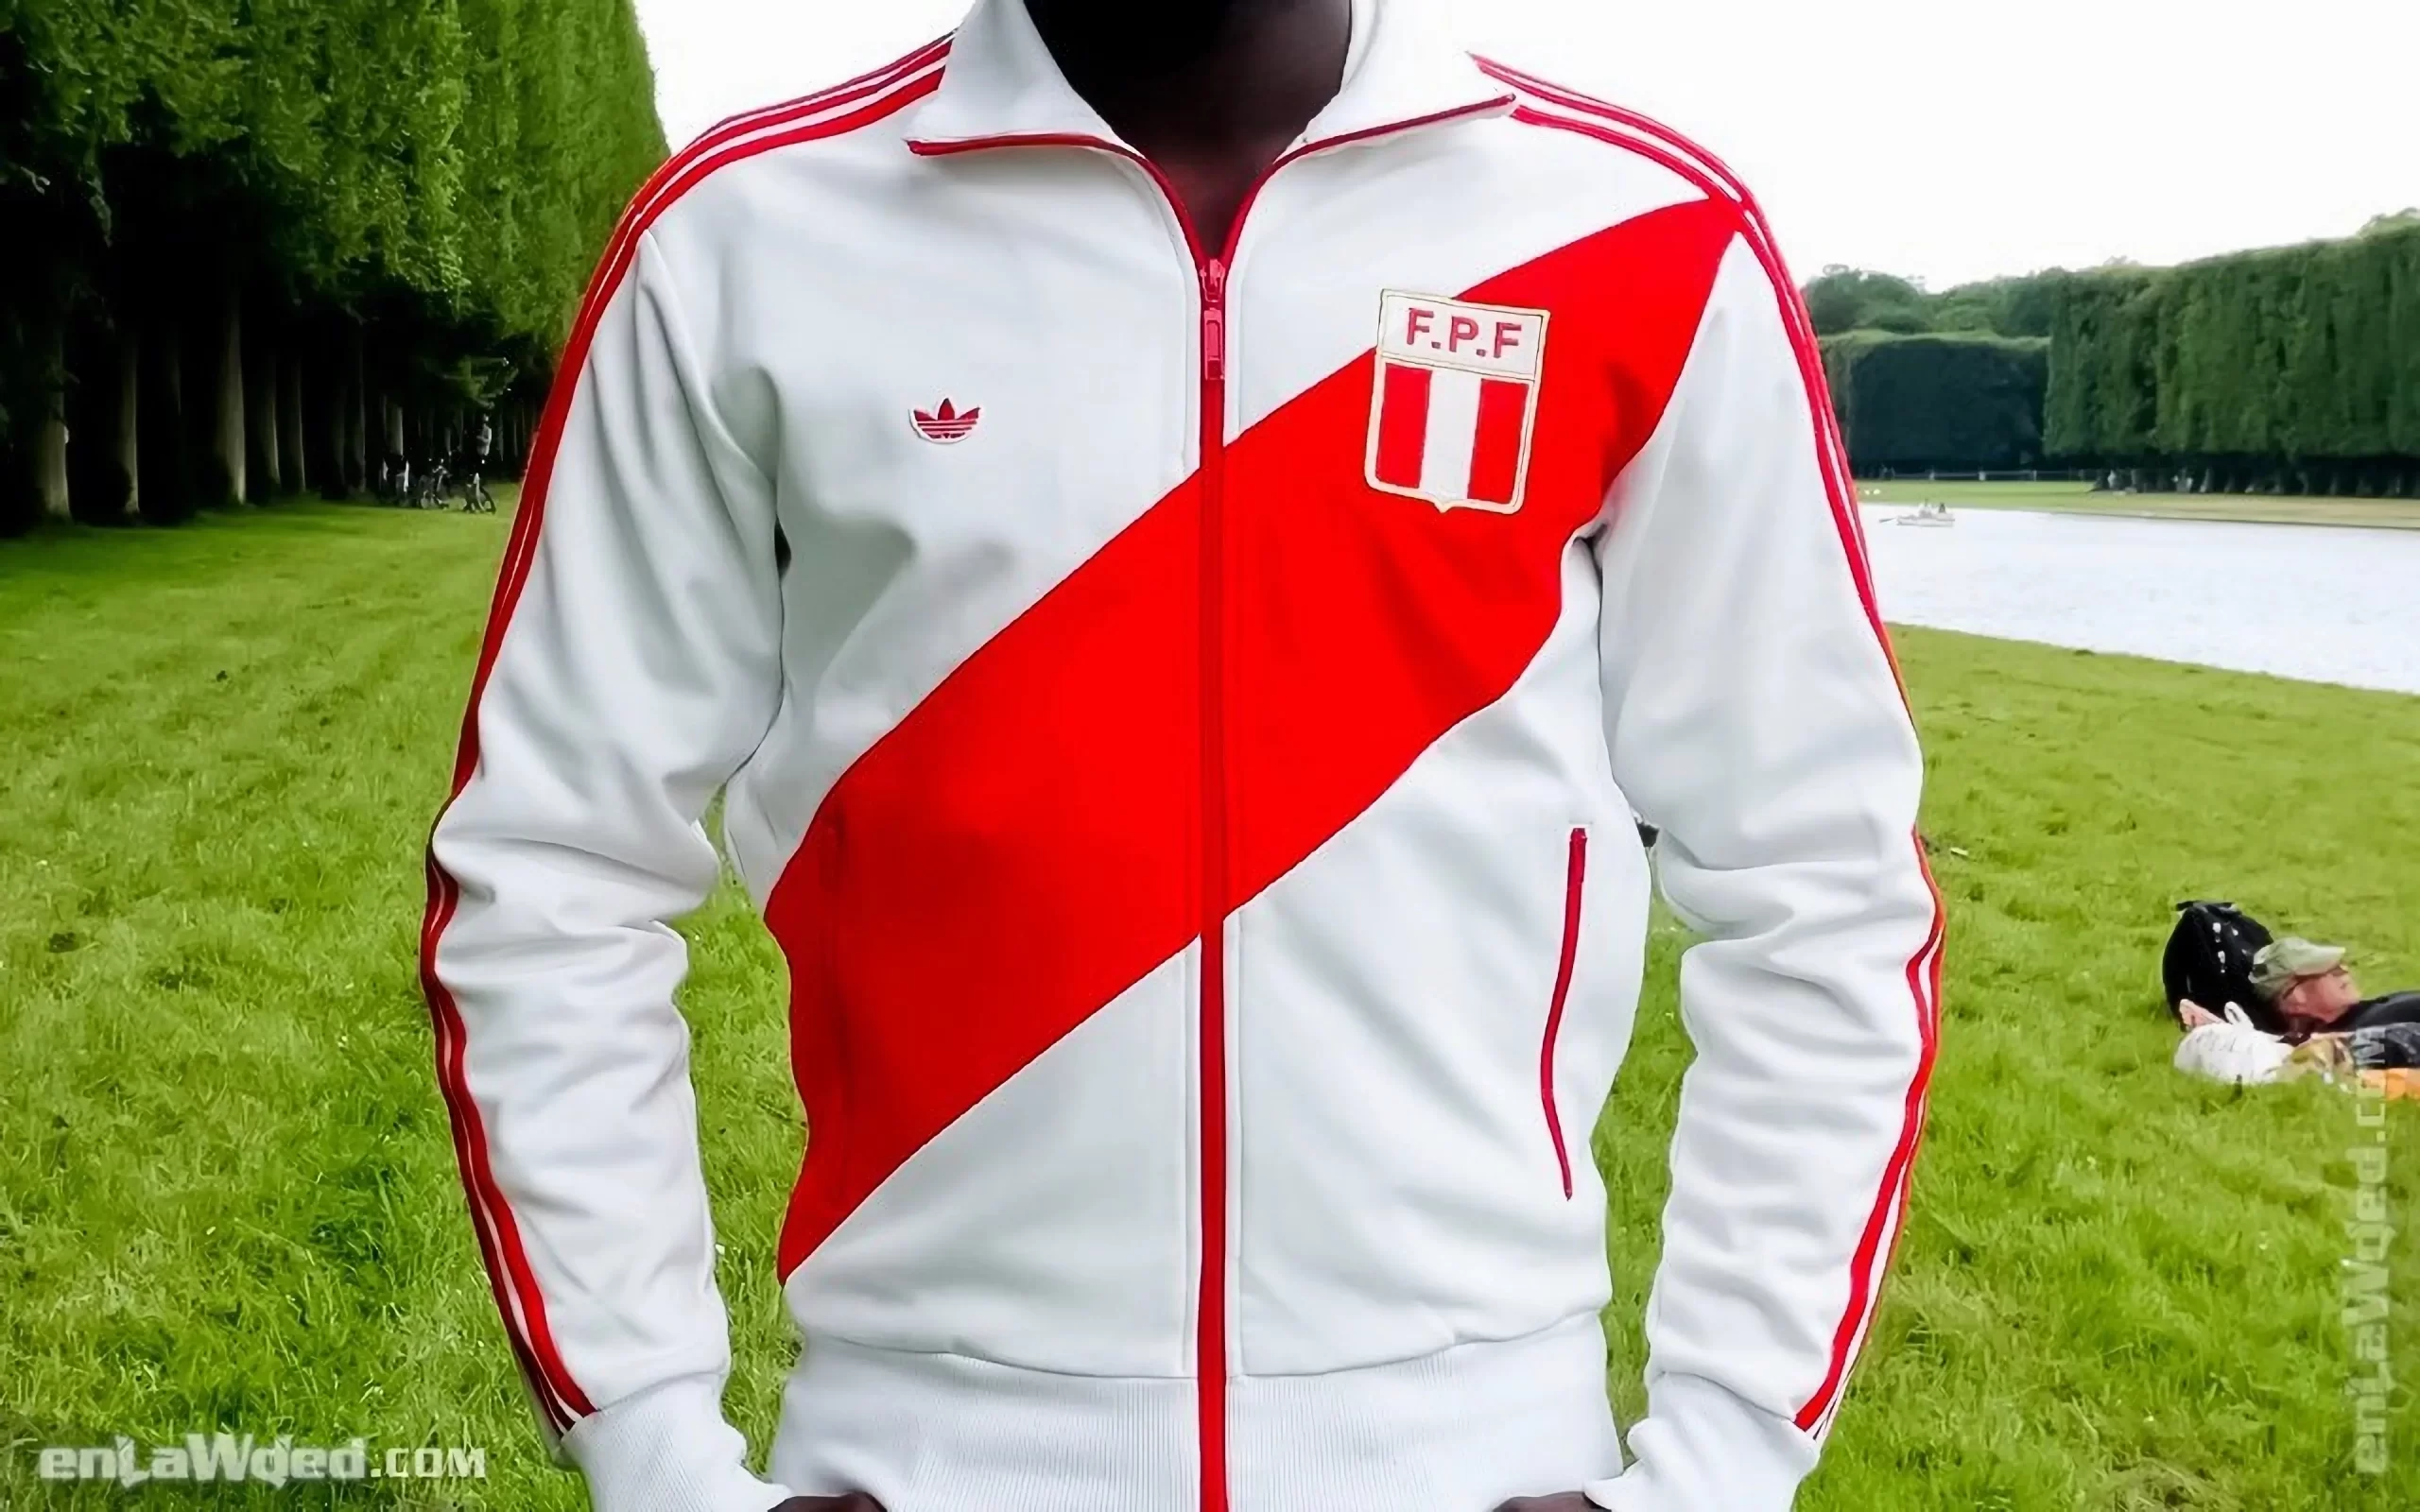 Men’s 2005 Peru ’78 Cubillas TT by Adidas Originals: Definitely (EnLawded.com file #lmc4np1kccgyu5chmgo)